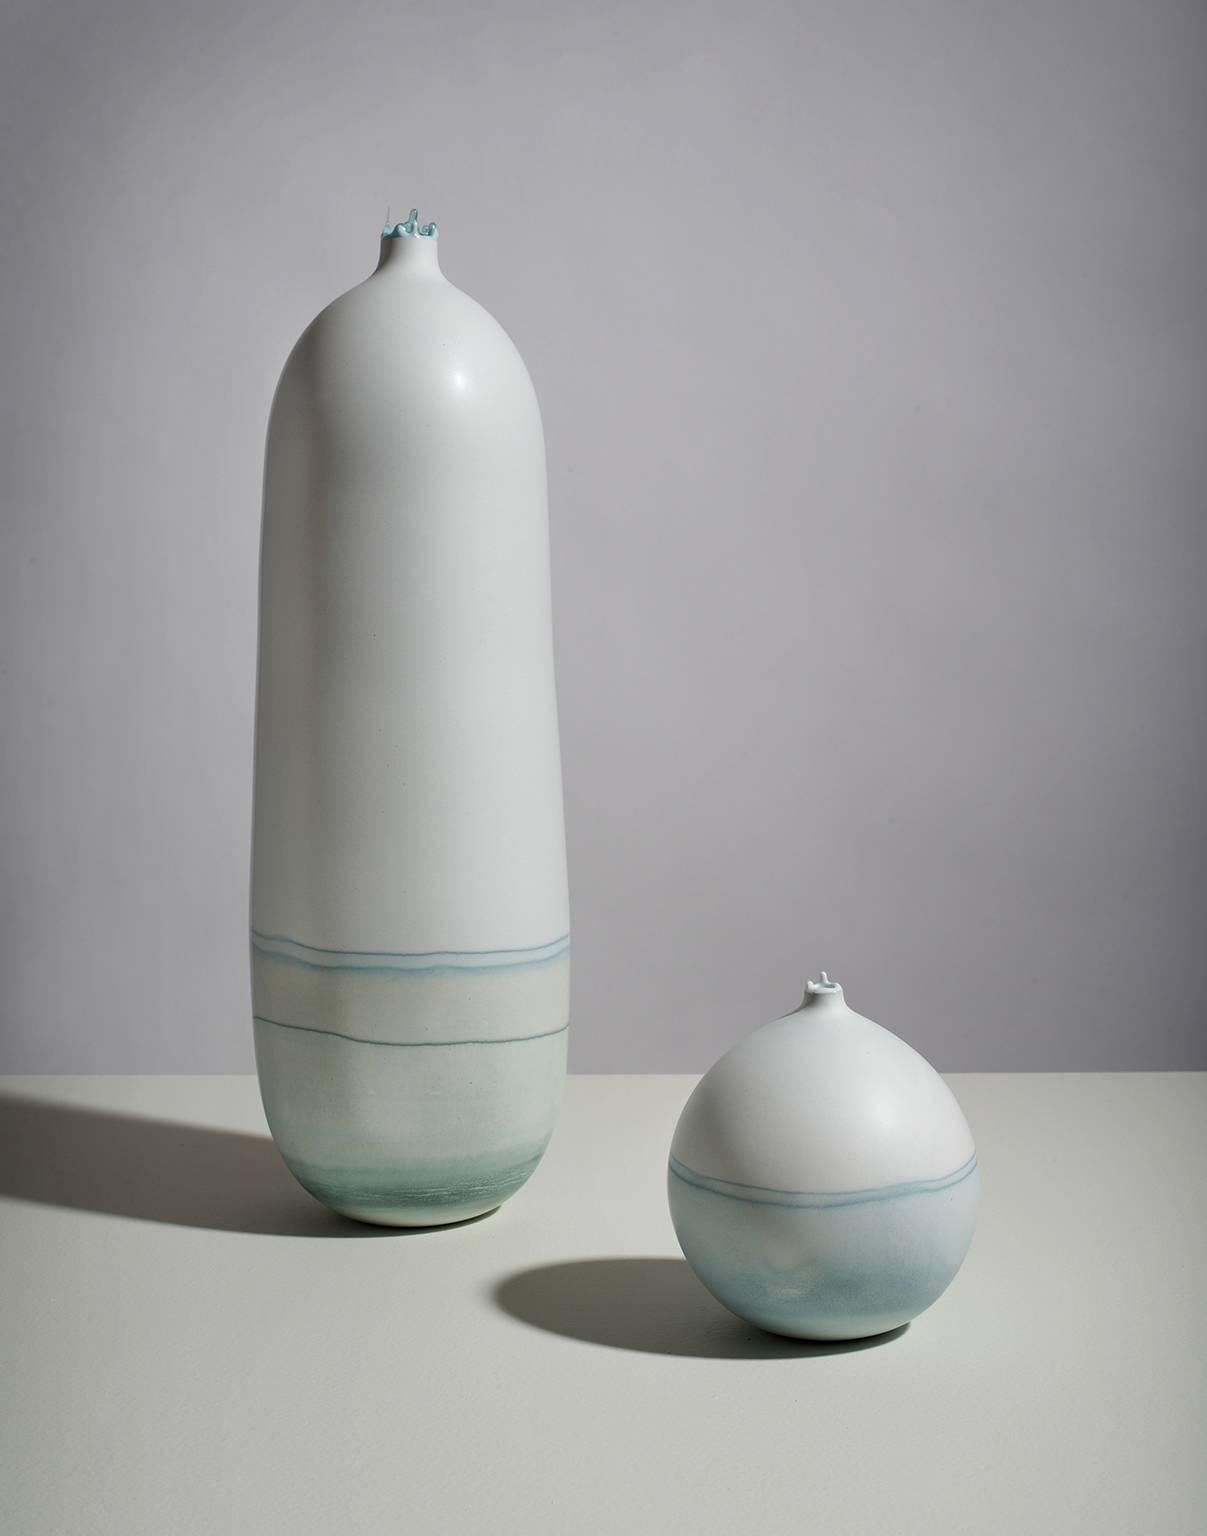 Ce magnifique vase minimal est fabriqué à la main par l'artiste Elyse Graham dans son studio de Los Angeles.

Cette collection de récipients s'inspire des paysages striés causés par l'érosion glaciaire ainsi que des couleurs magnifiques que l'on